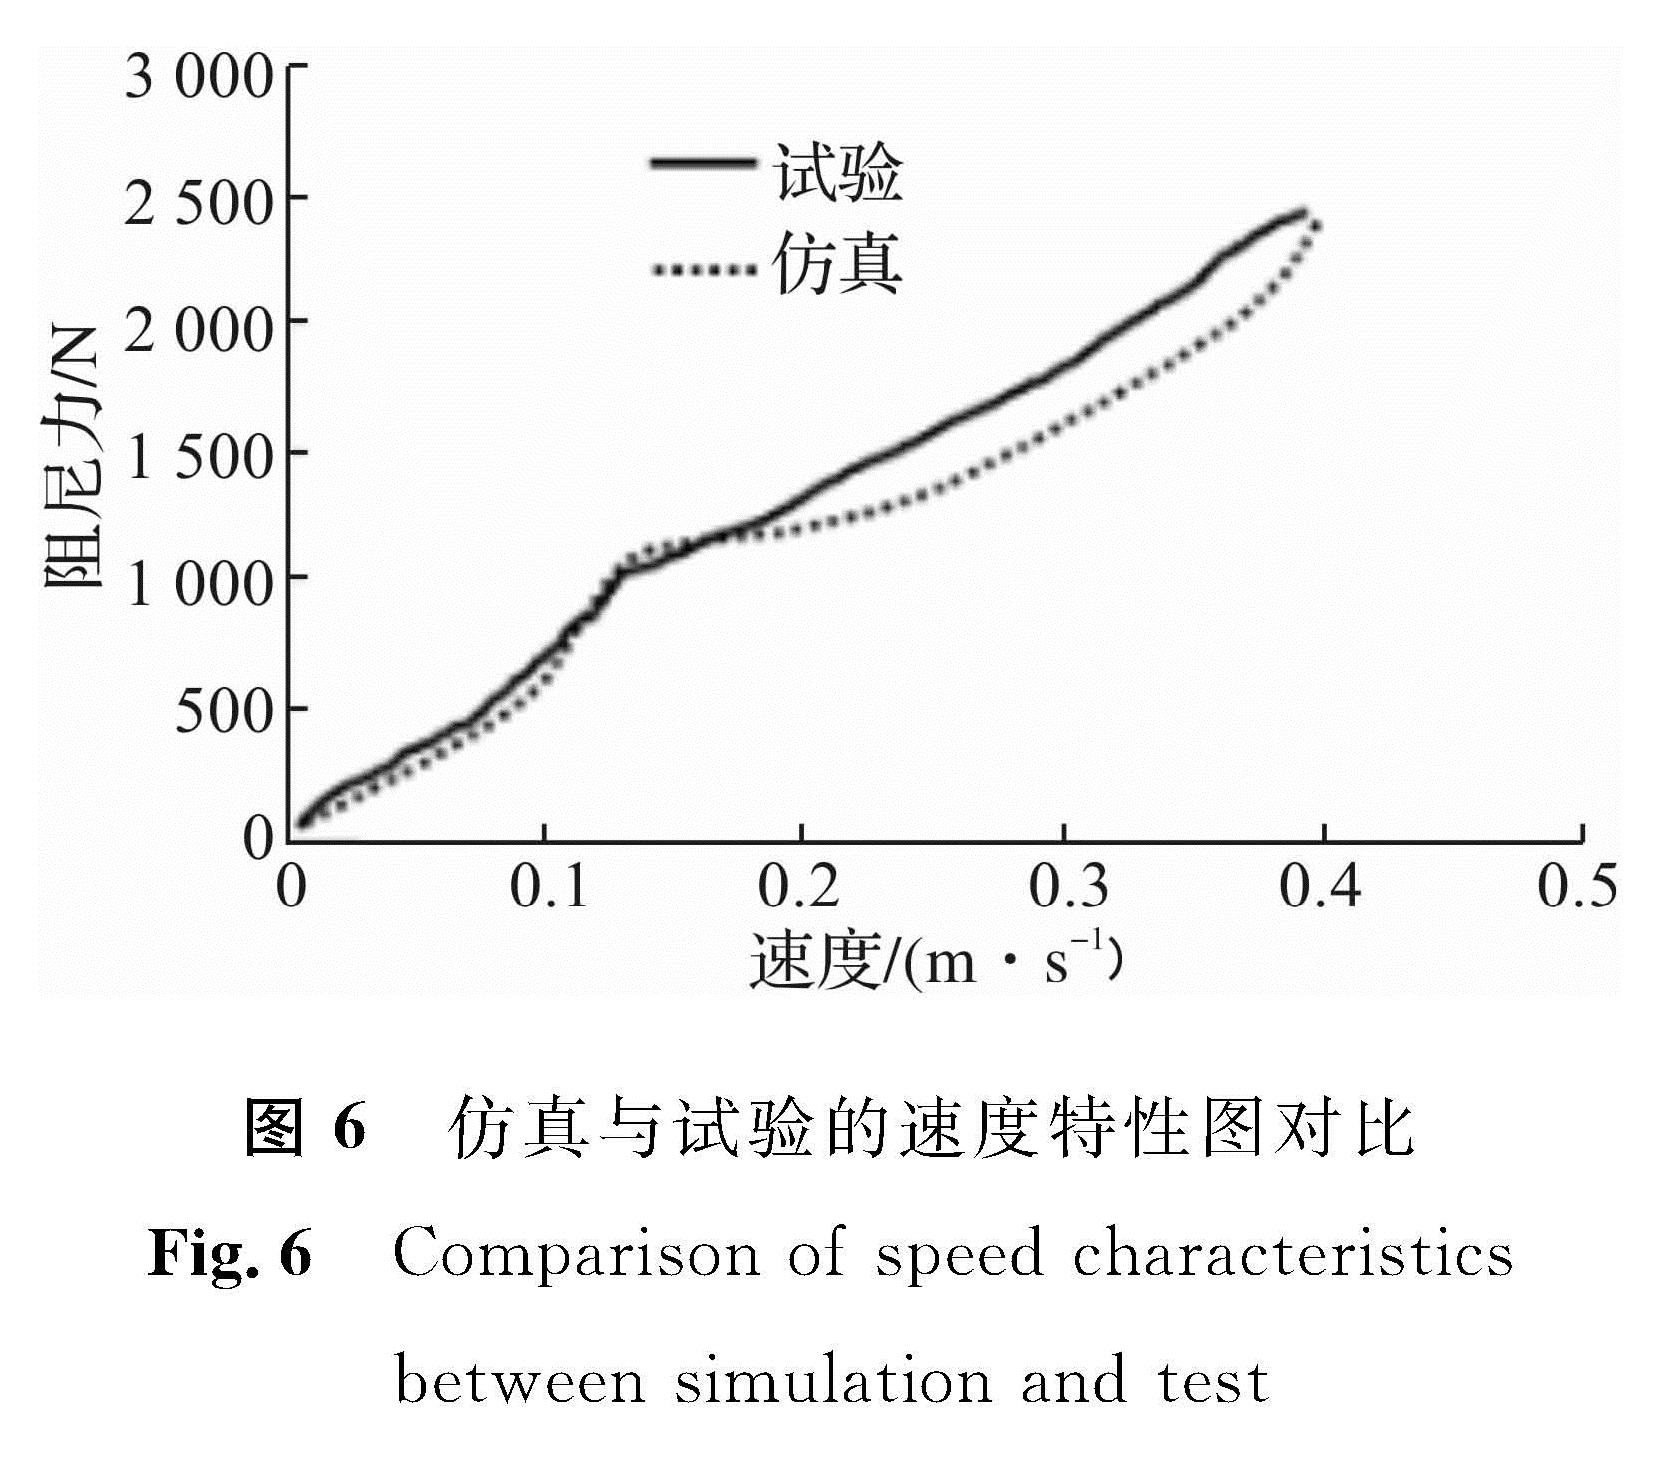 图6 仿真与试验的速度特性图对比<br/>Fig.6 Comparison of speed characteristics between simulation and test